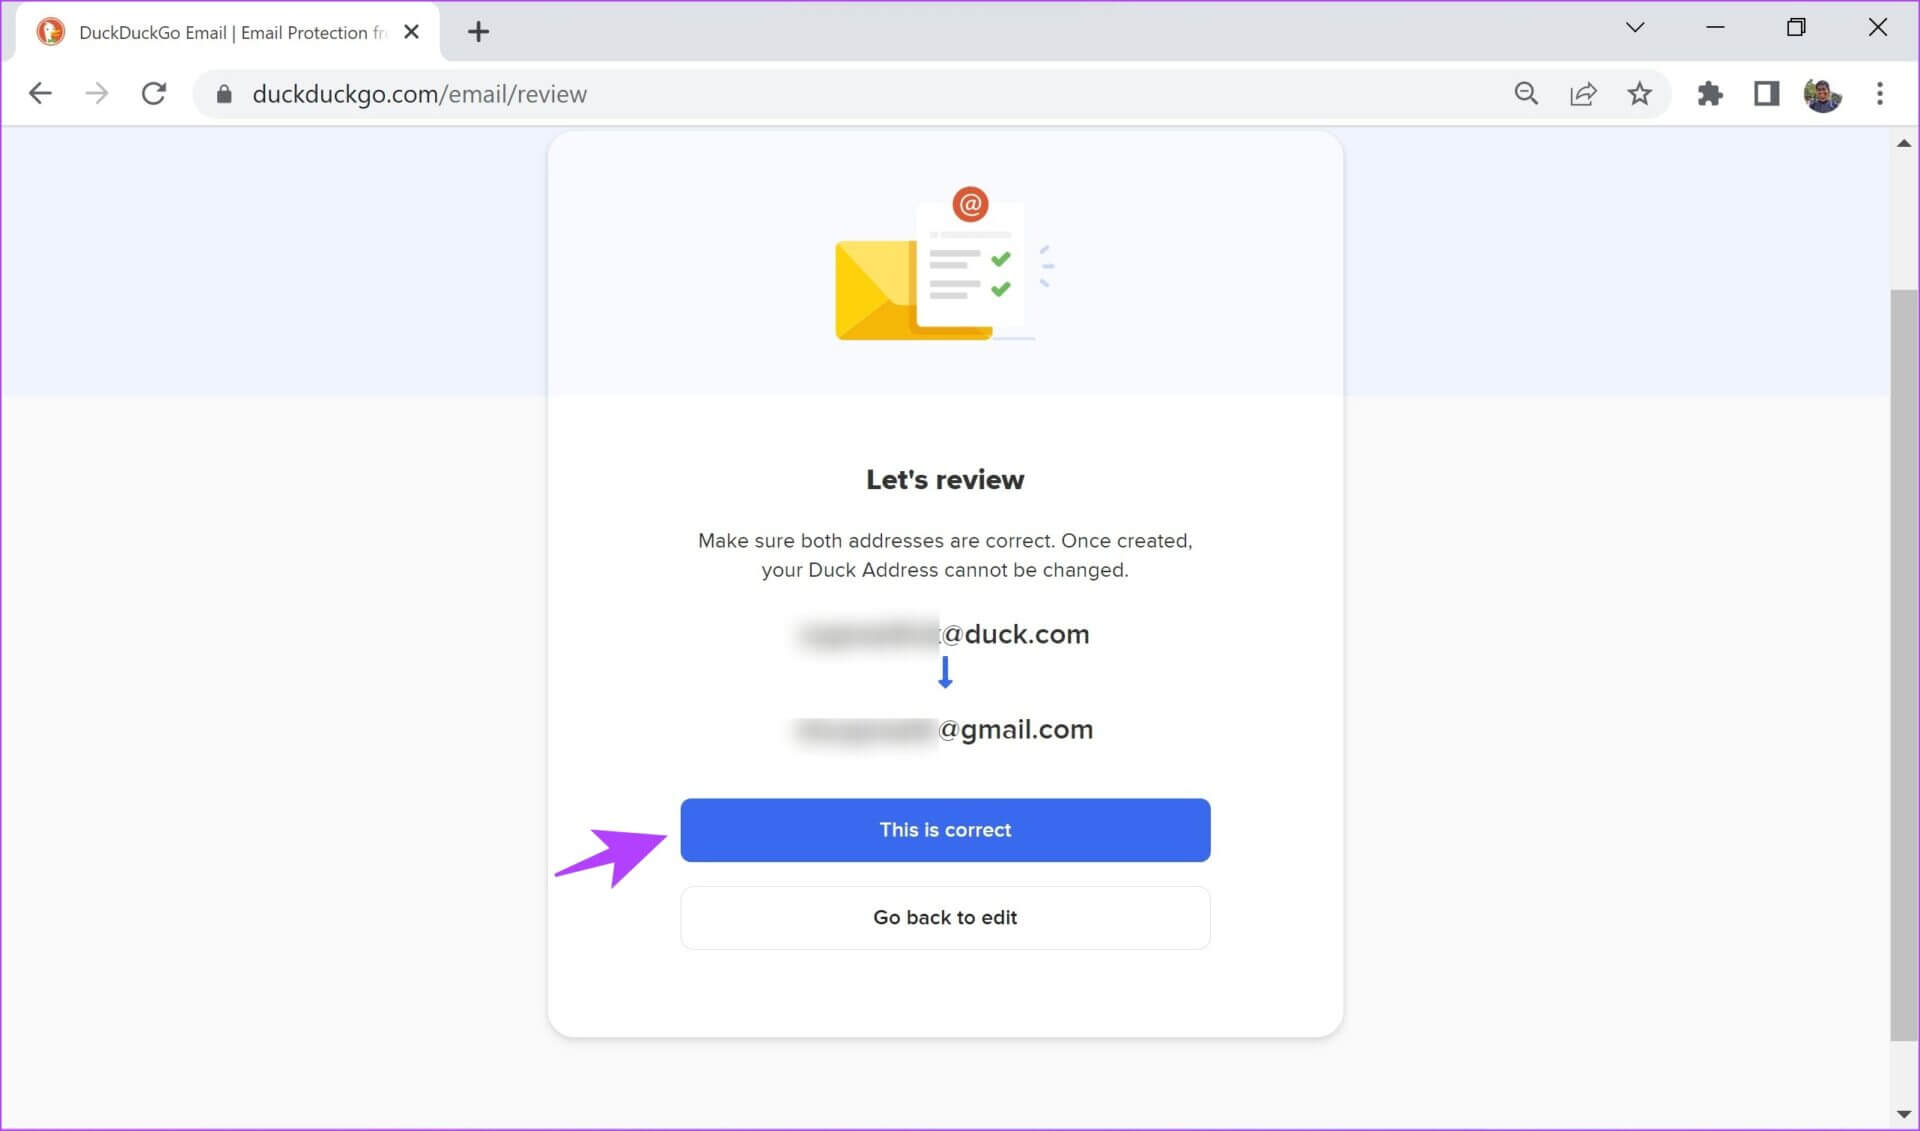 كيفية استخدام خدمة حماية البريد الإلكتروني DuckDuckGo - %categories